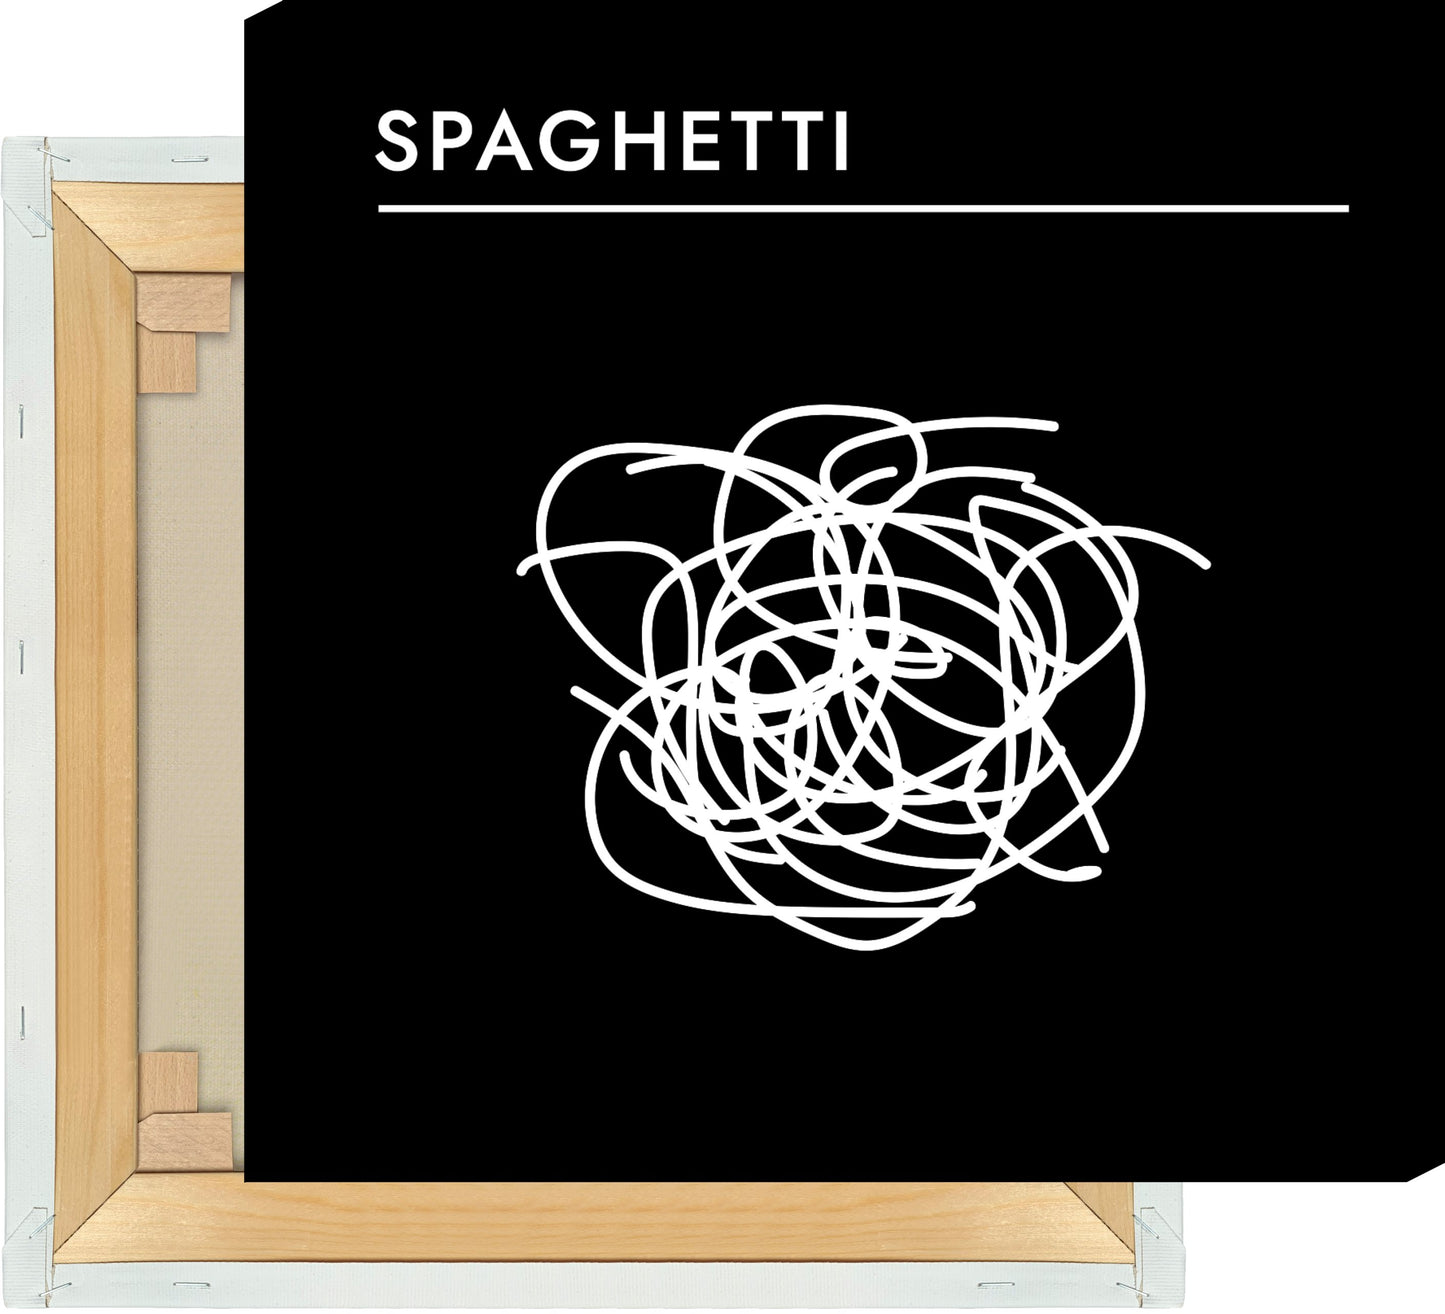 Leinwand Pasta - Spaghetti #1